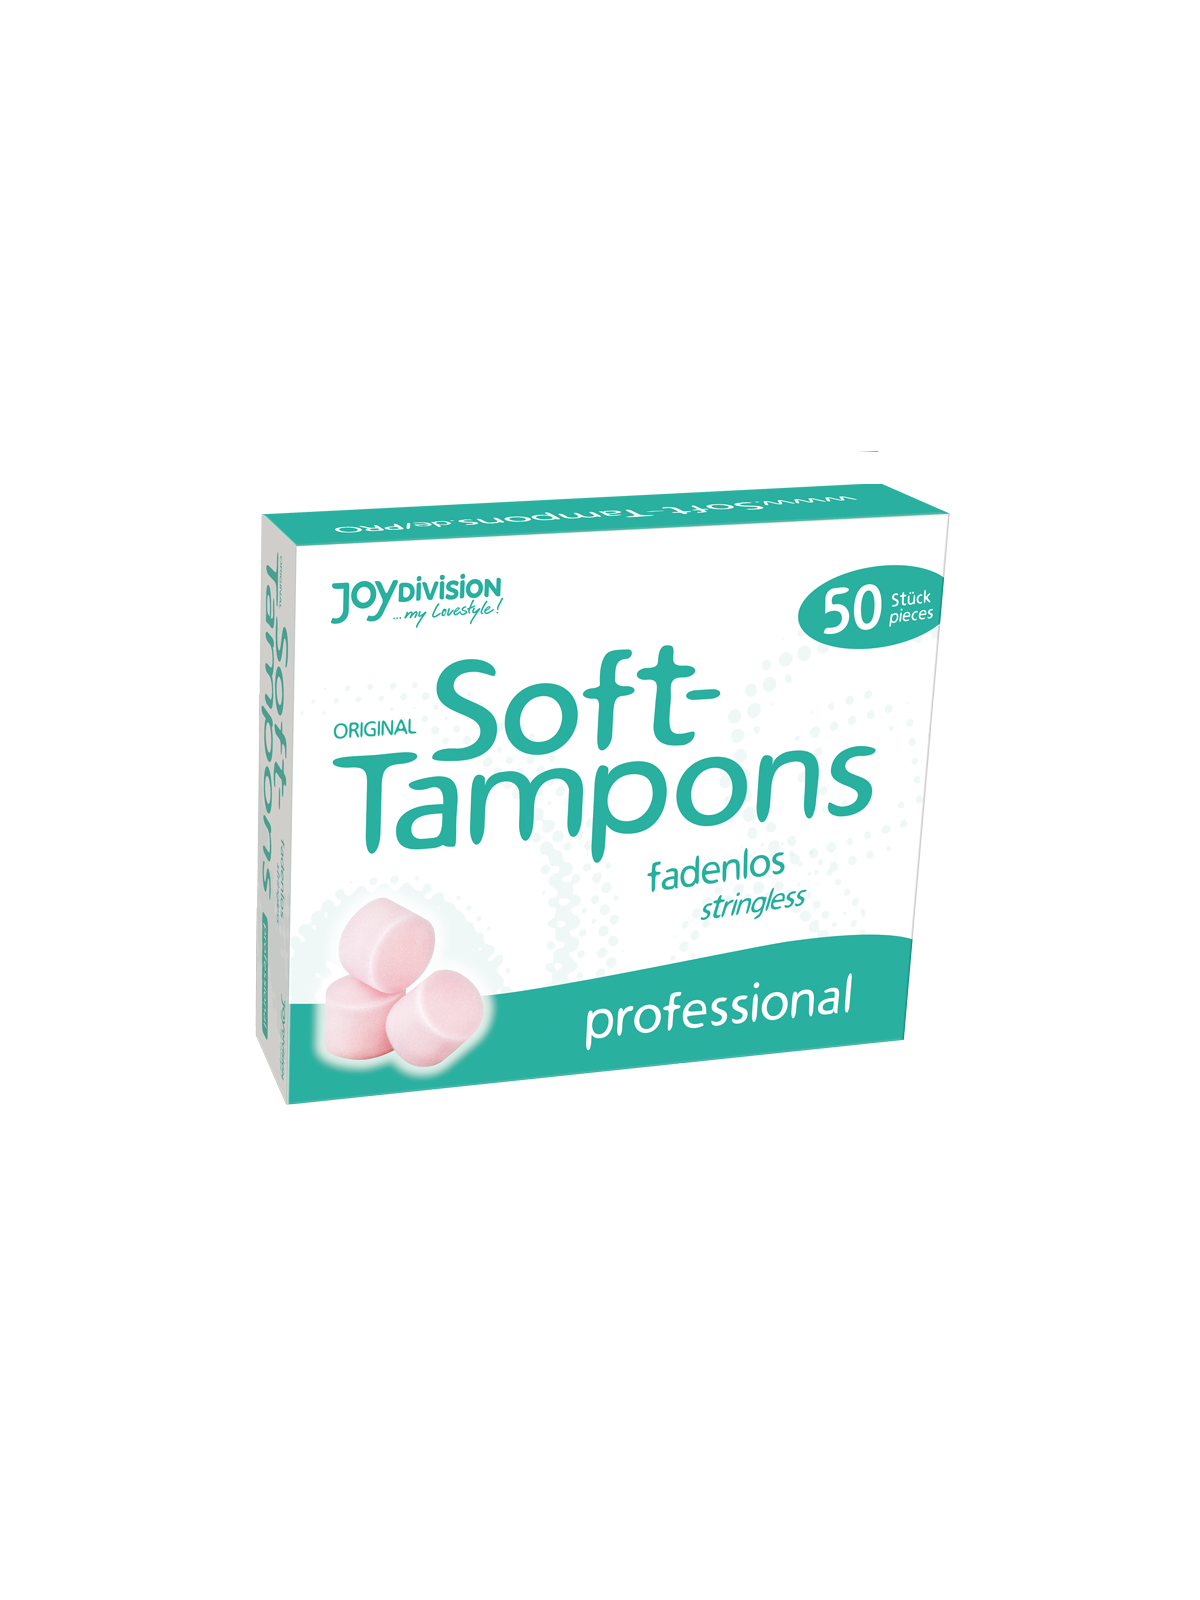 Soft-Tampons Tampones Originales Professional 50 uds - Comprar Menstruación Soft-Tampons - Tampones & copas menstruales (1)